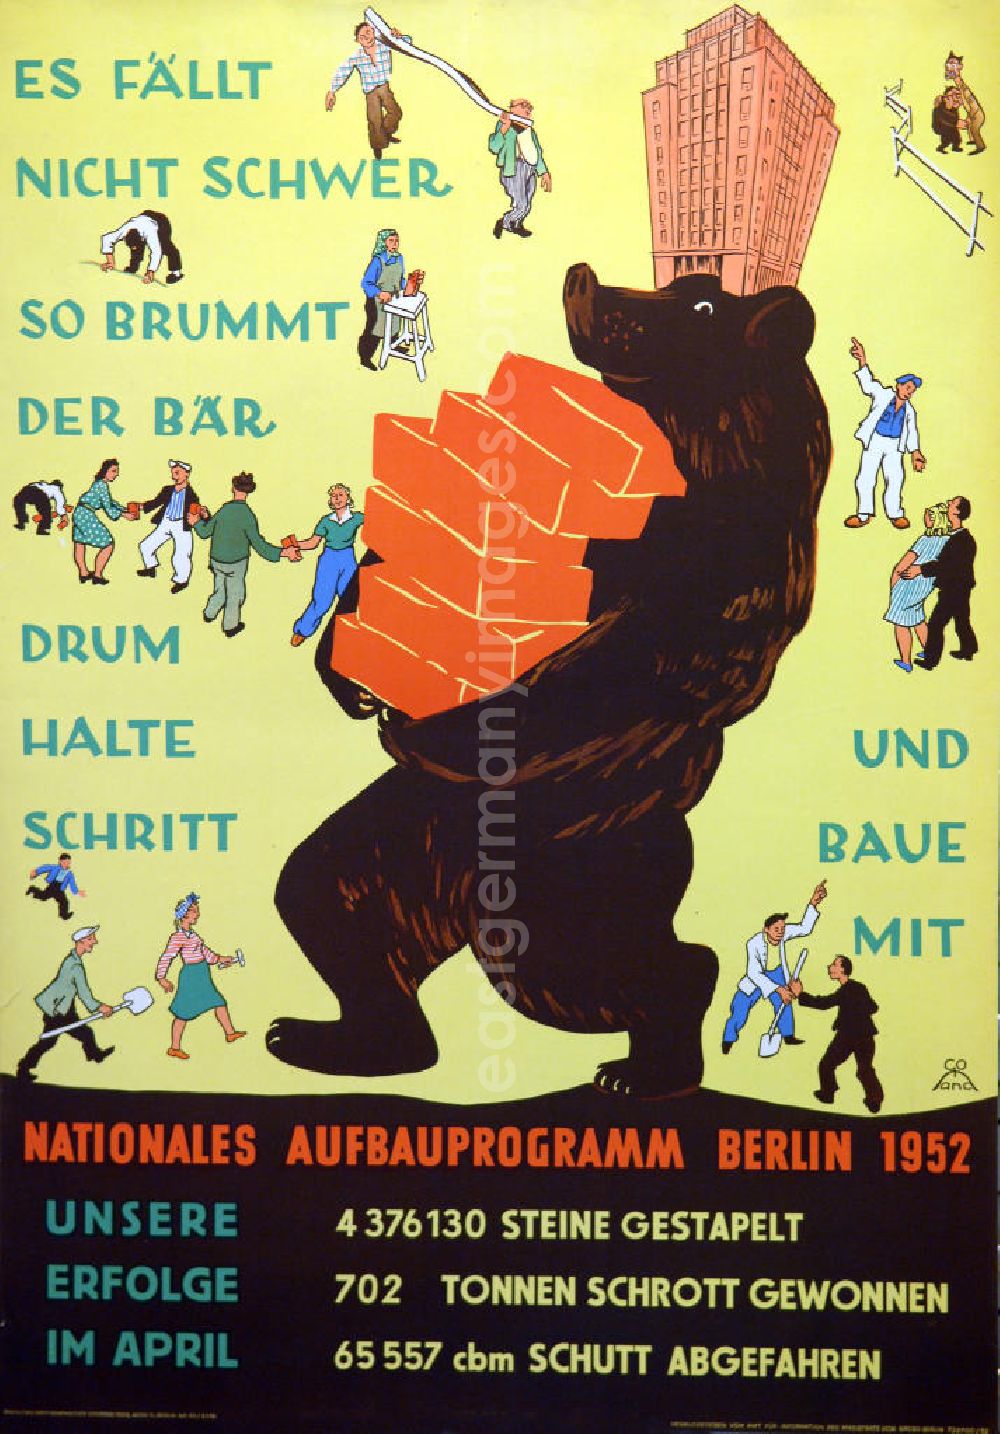 GDR photo archive: Berlin - Plakat von Herbert Sandberg Nationales Aufbauprogramm Berlin 1952 aus dem Jahr 1952, 59,3x84,